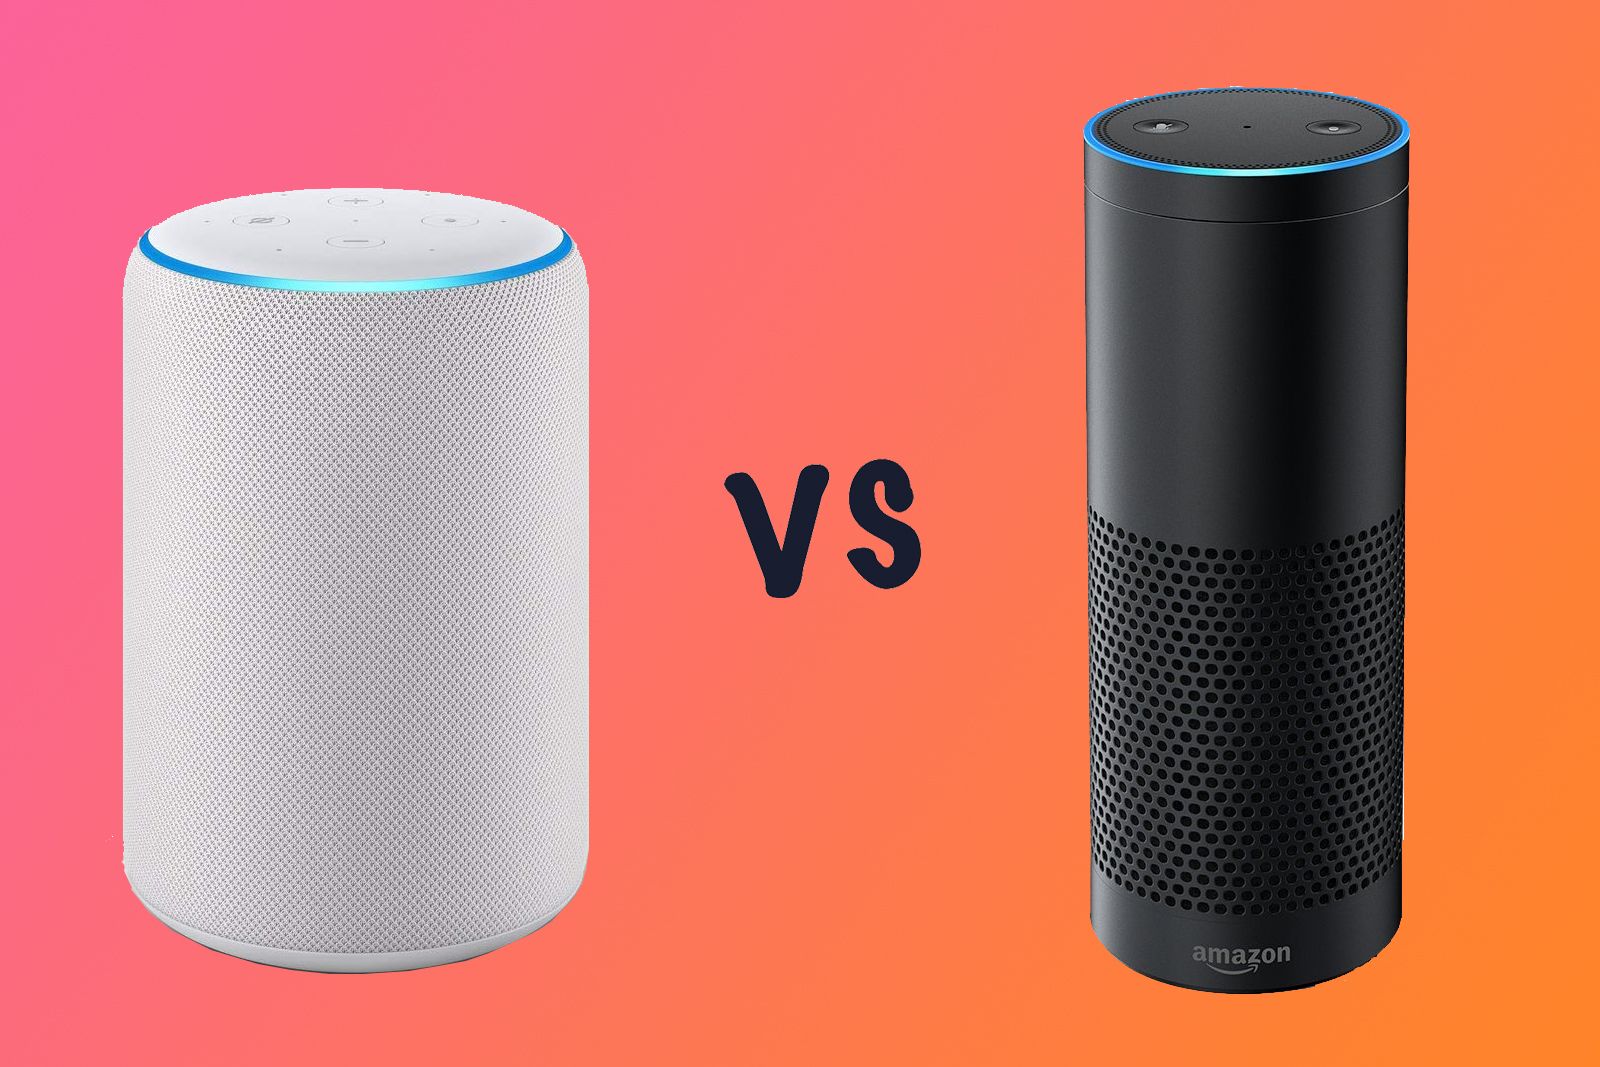  Echo vs nuevo Echo, compara el nuevo altavoz inteligente